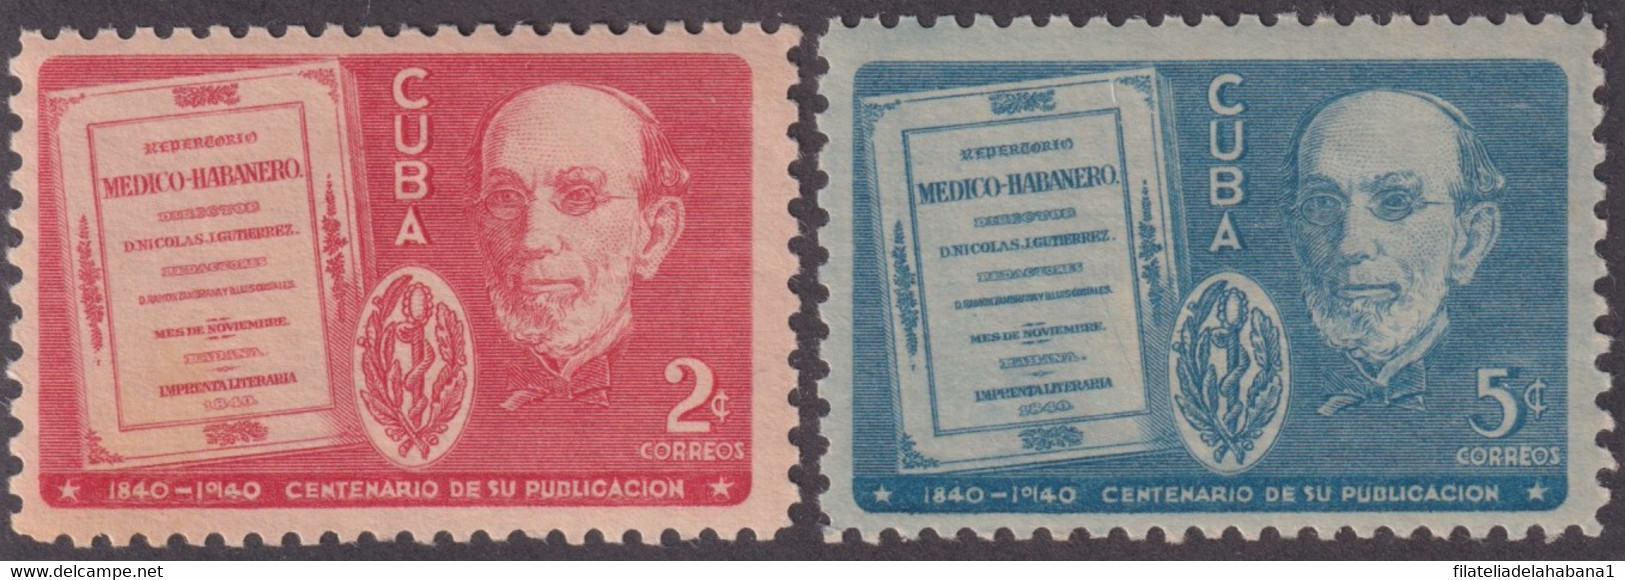 1940-339 CUBA REPUBLICA 1940 MNH CENT REPERTORIO MEDICO HABANERO GUTIERREZ - Unused Stamps